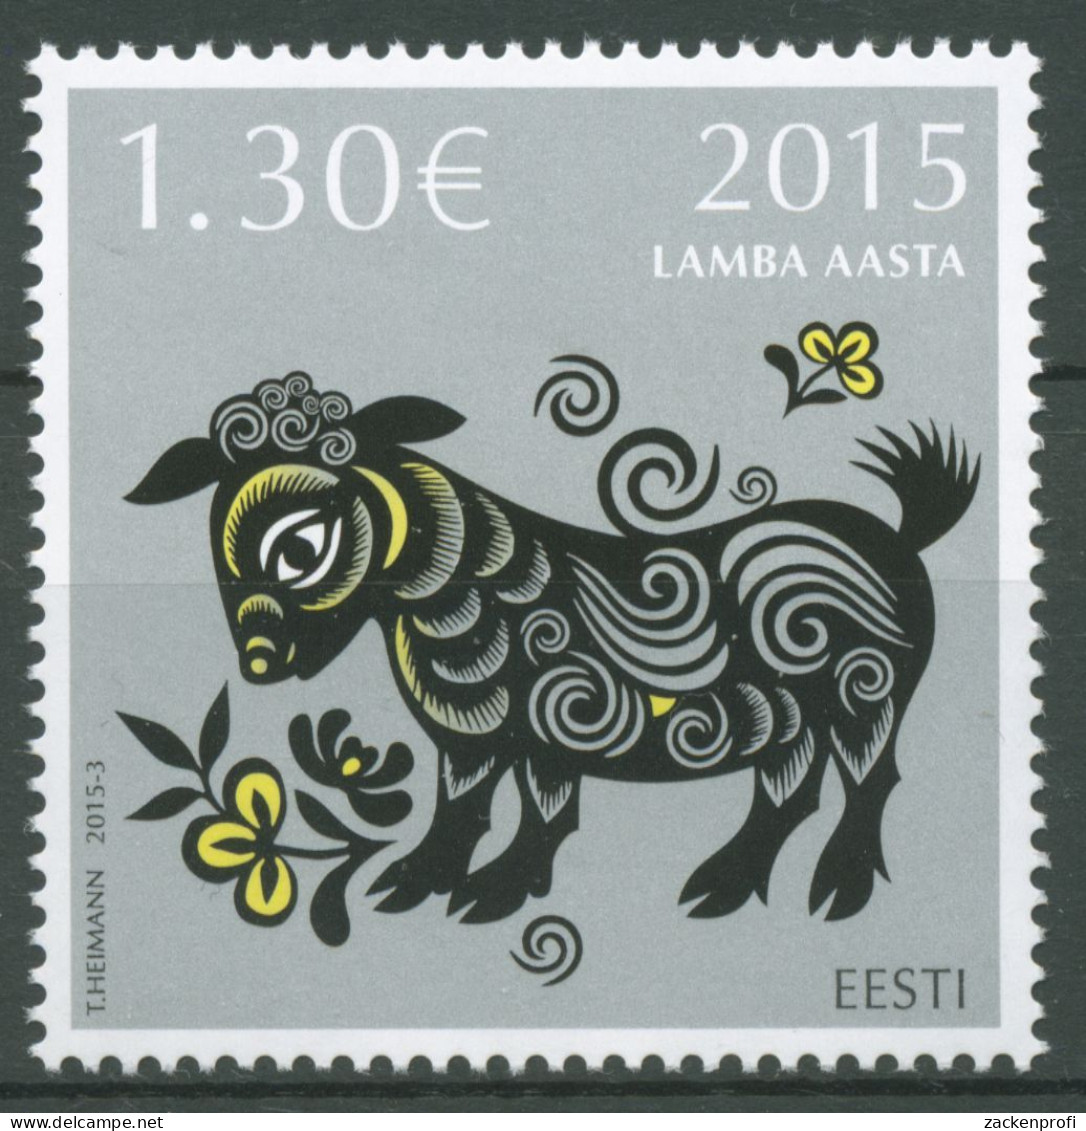 Estland 2015 Chinesisches Neujahr Jahr Des Schafes 816 Postfrisch - Estonia